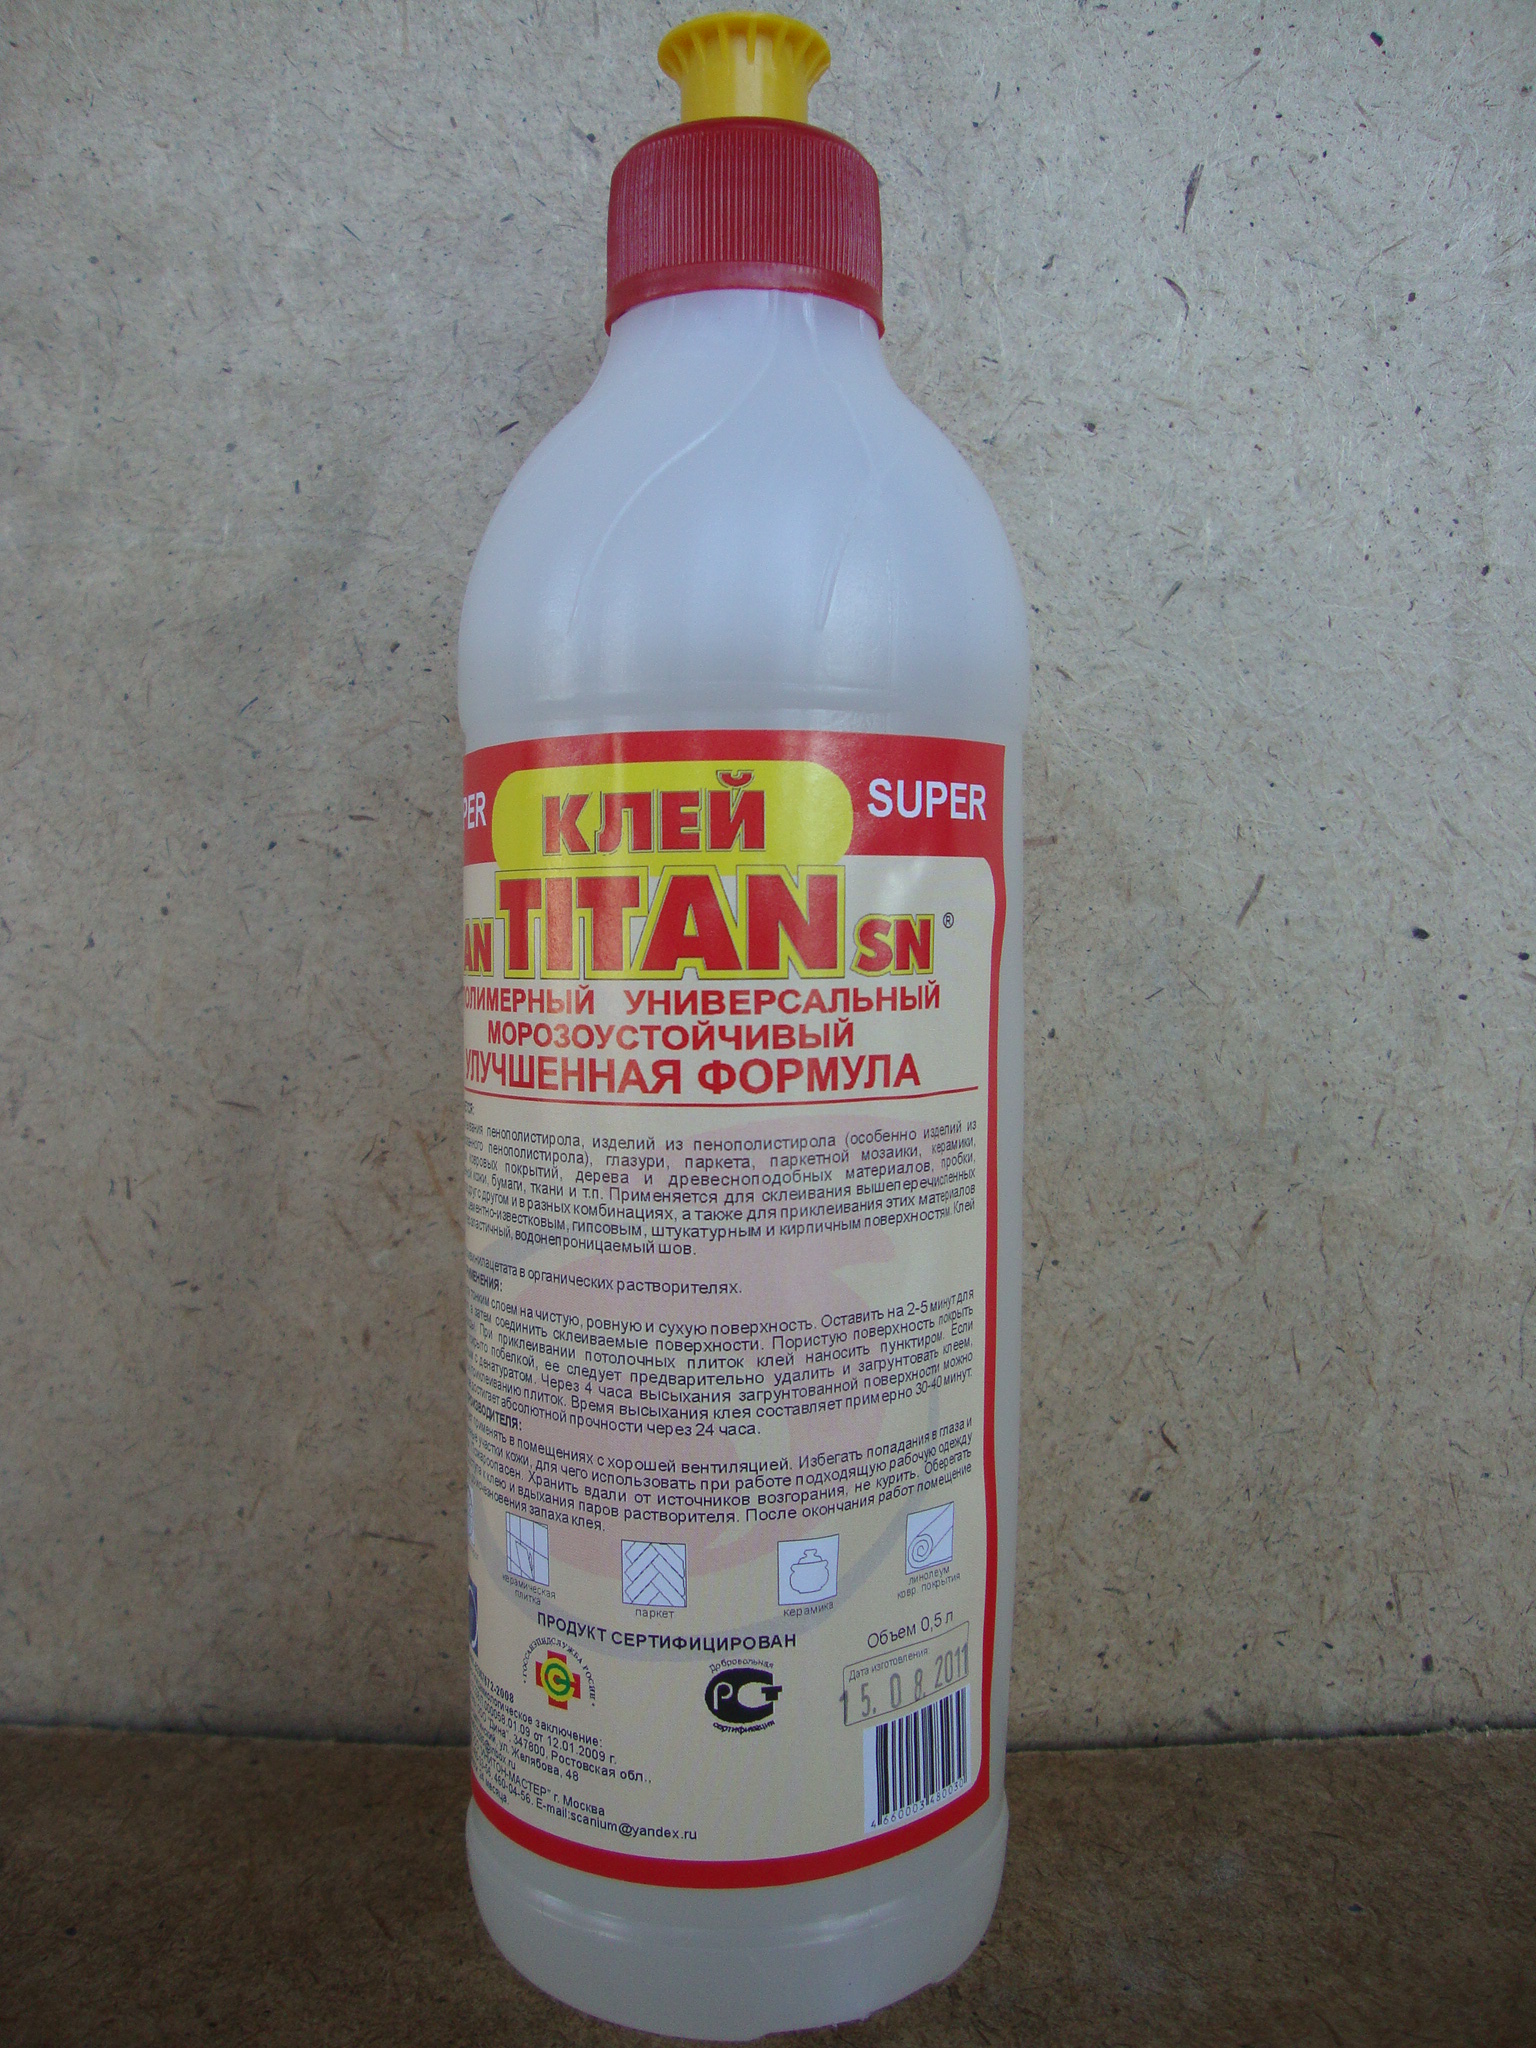 Купить литр клея. Клей полимерный ELTITANS (Titan). Титан клей 400мл. Клей Титан 1л. Клей Titan Wild универсальный водостойкий.